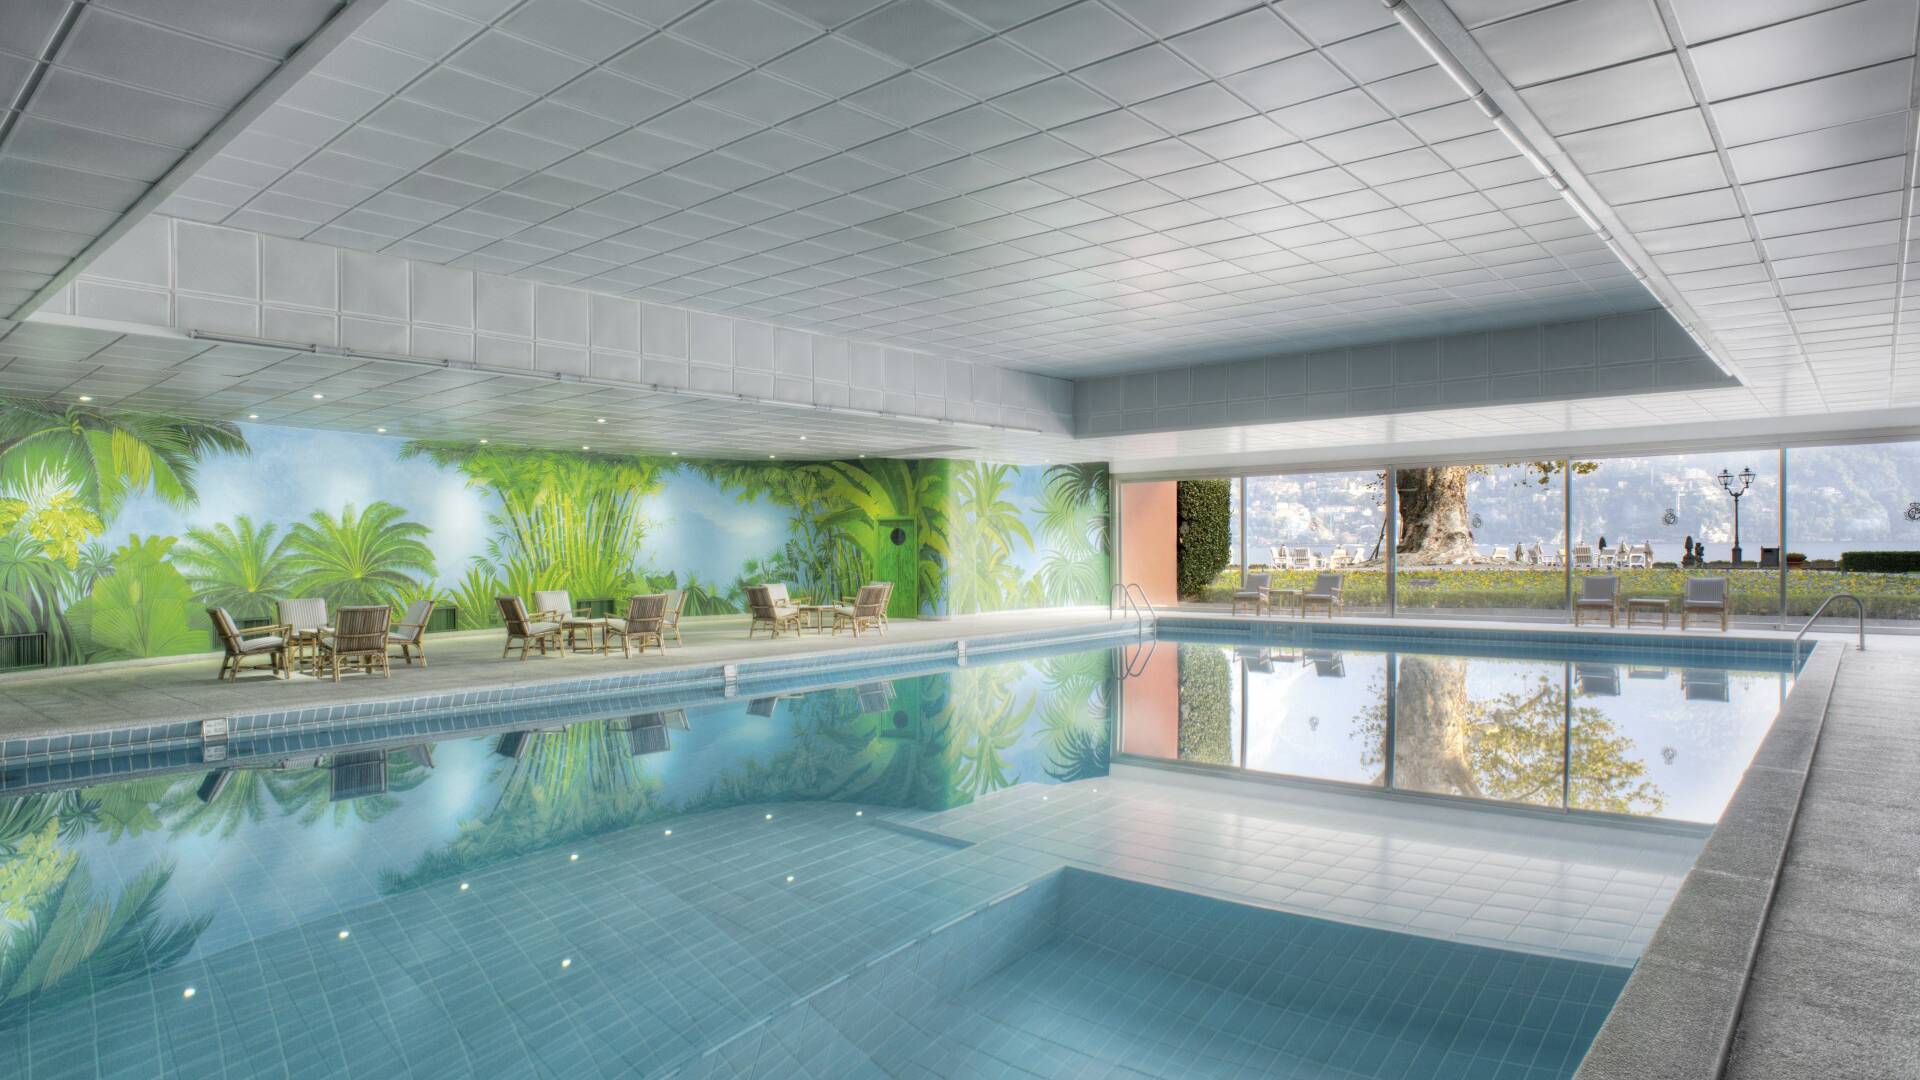 Villa D'Este hotel, Como lake, indoor swimming pool